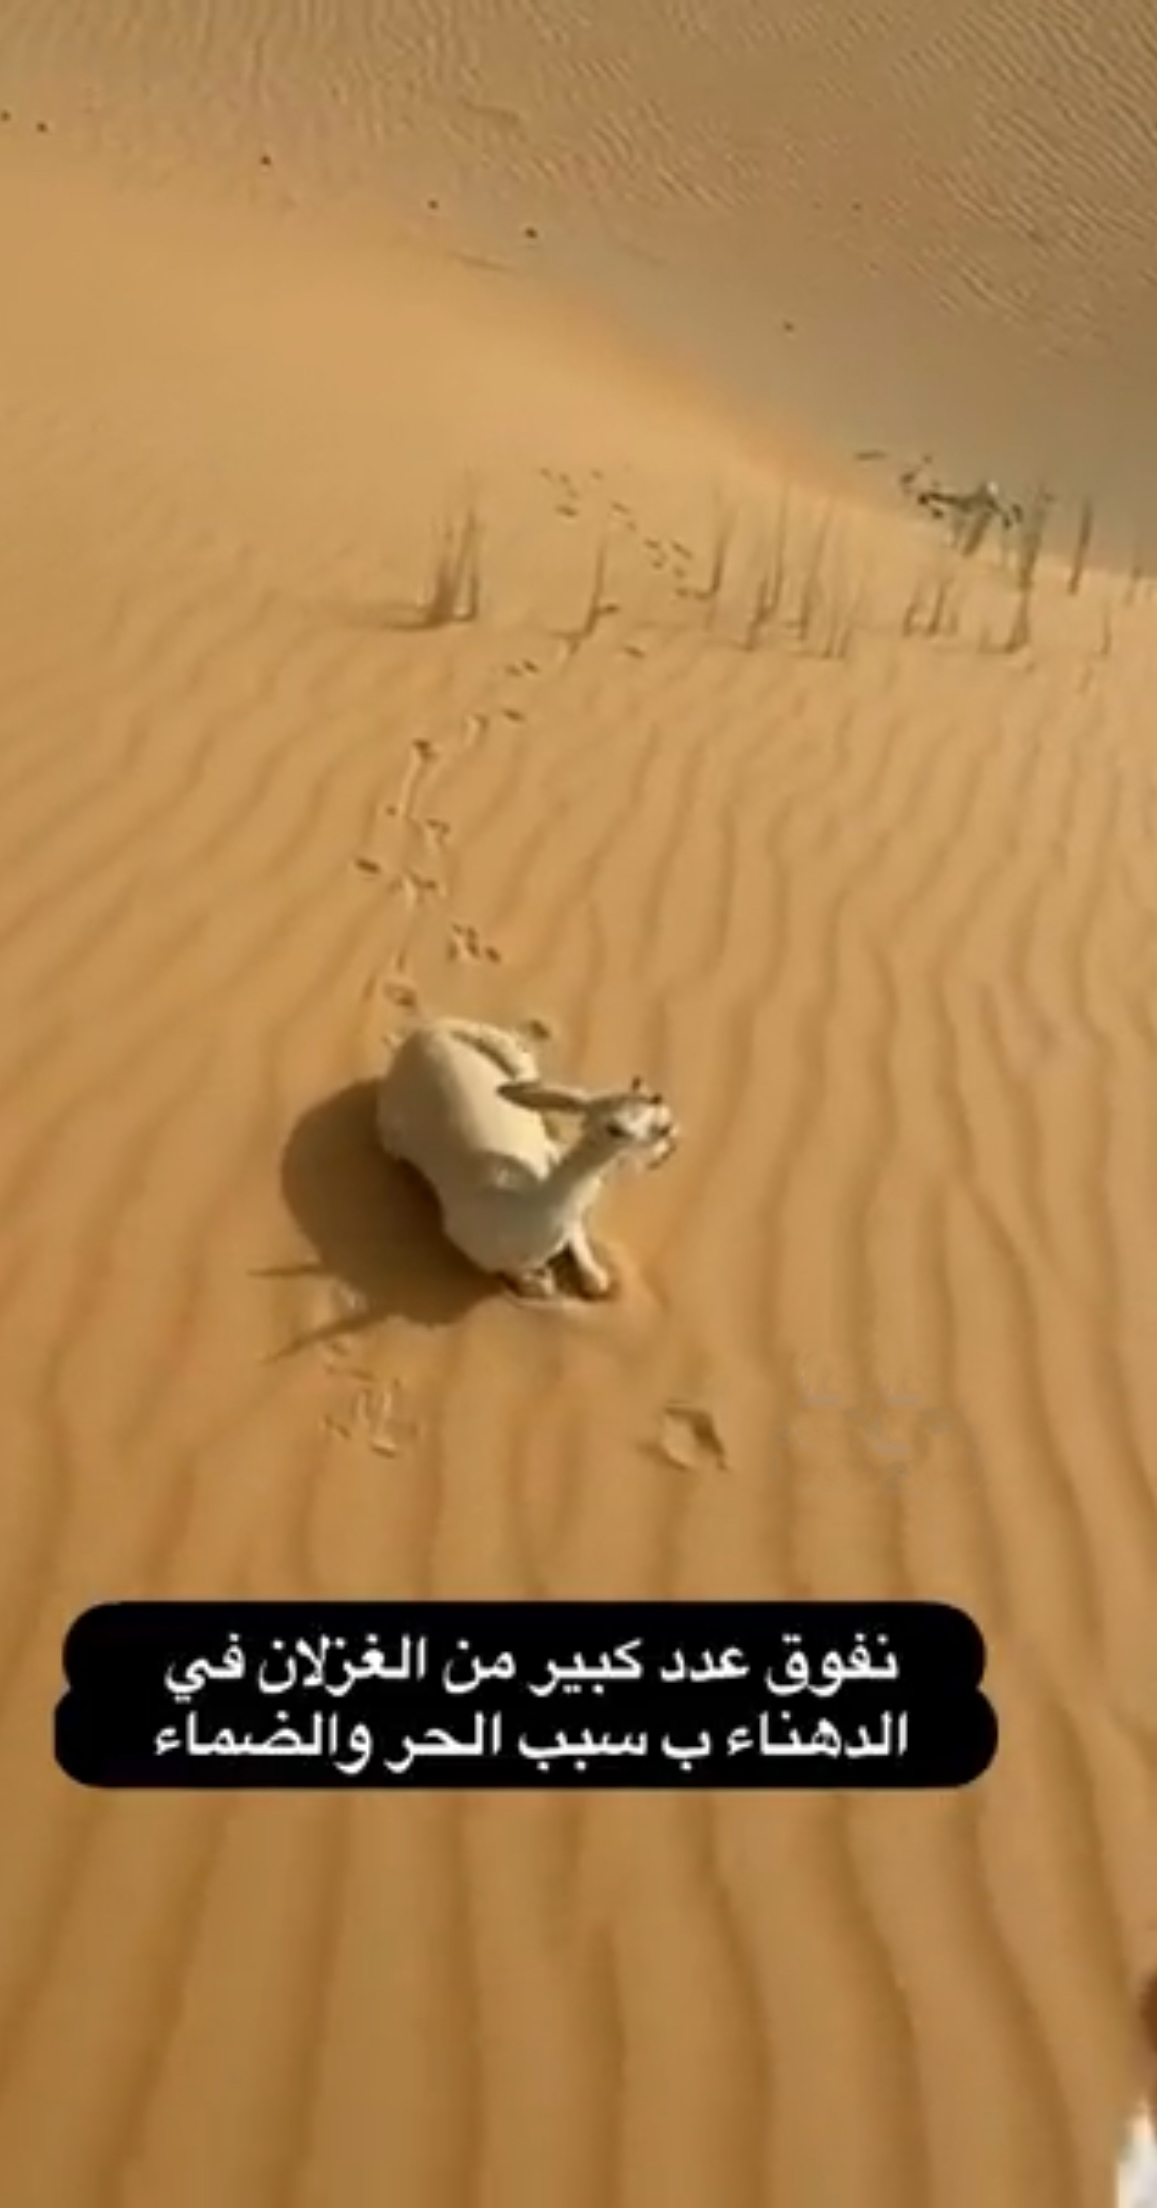 الحياة الفطرية: فيديو نفوق ظباء الدهناء يعود لمنطقة خارج السعودية